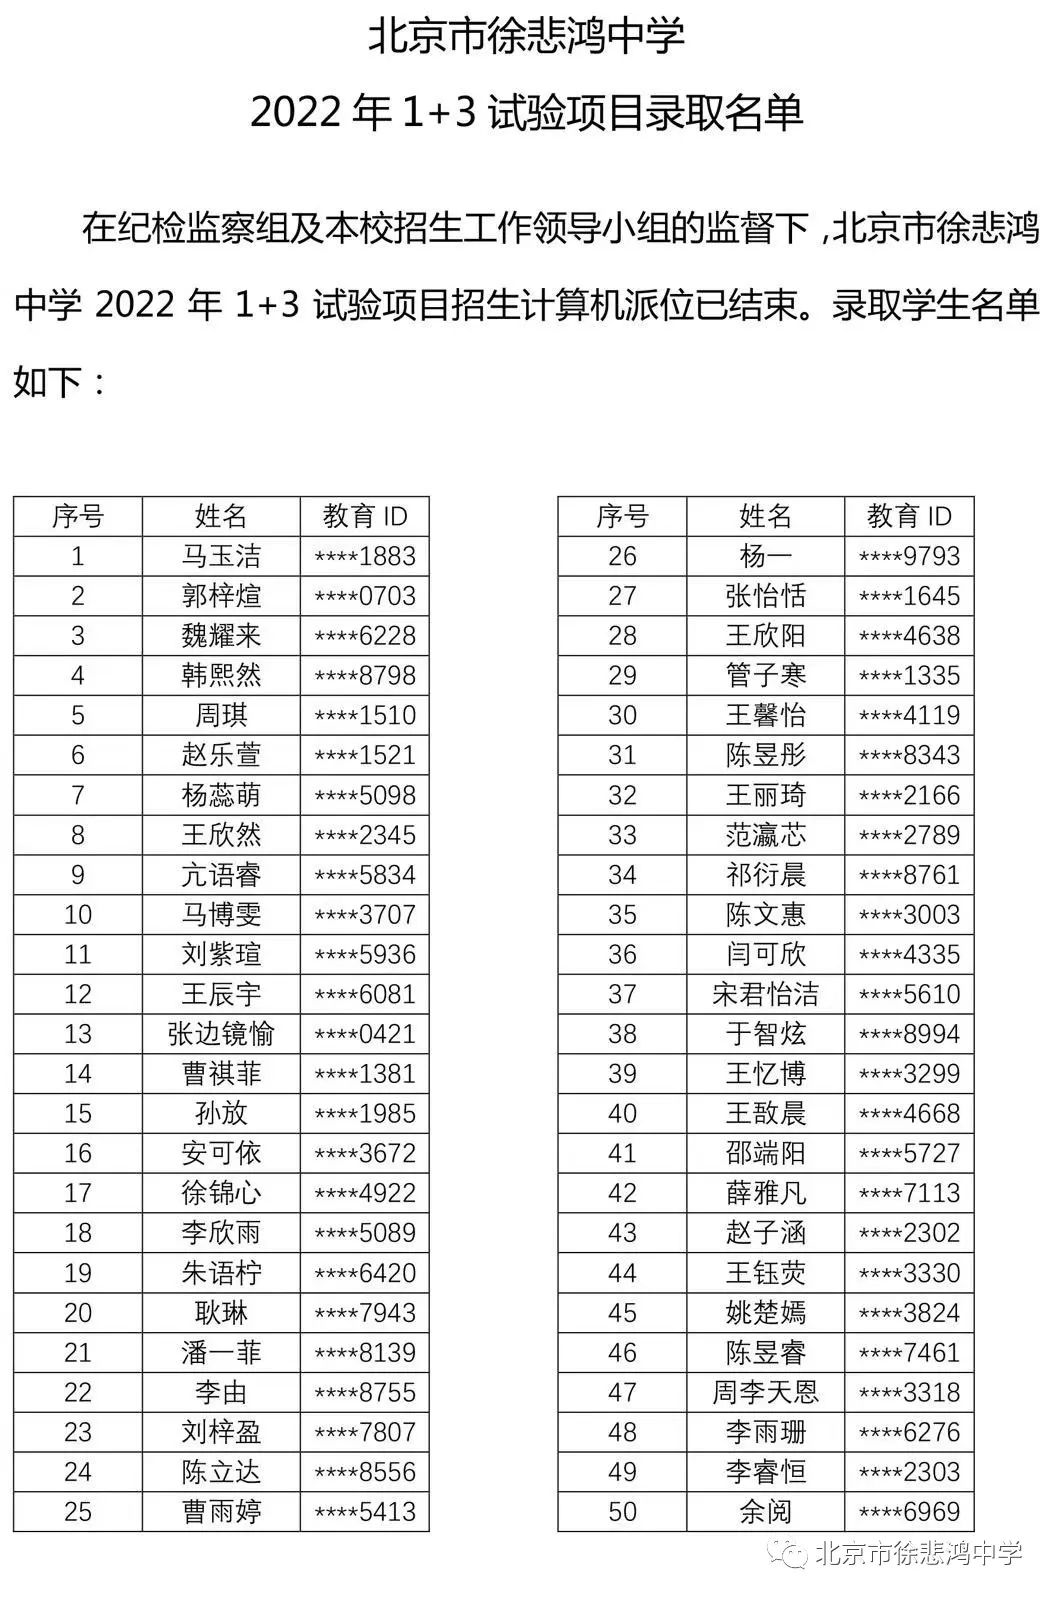 北京市徐悲鸿中学2022年1+3试验项目录取名单